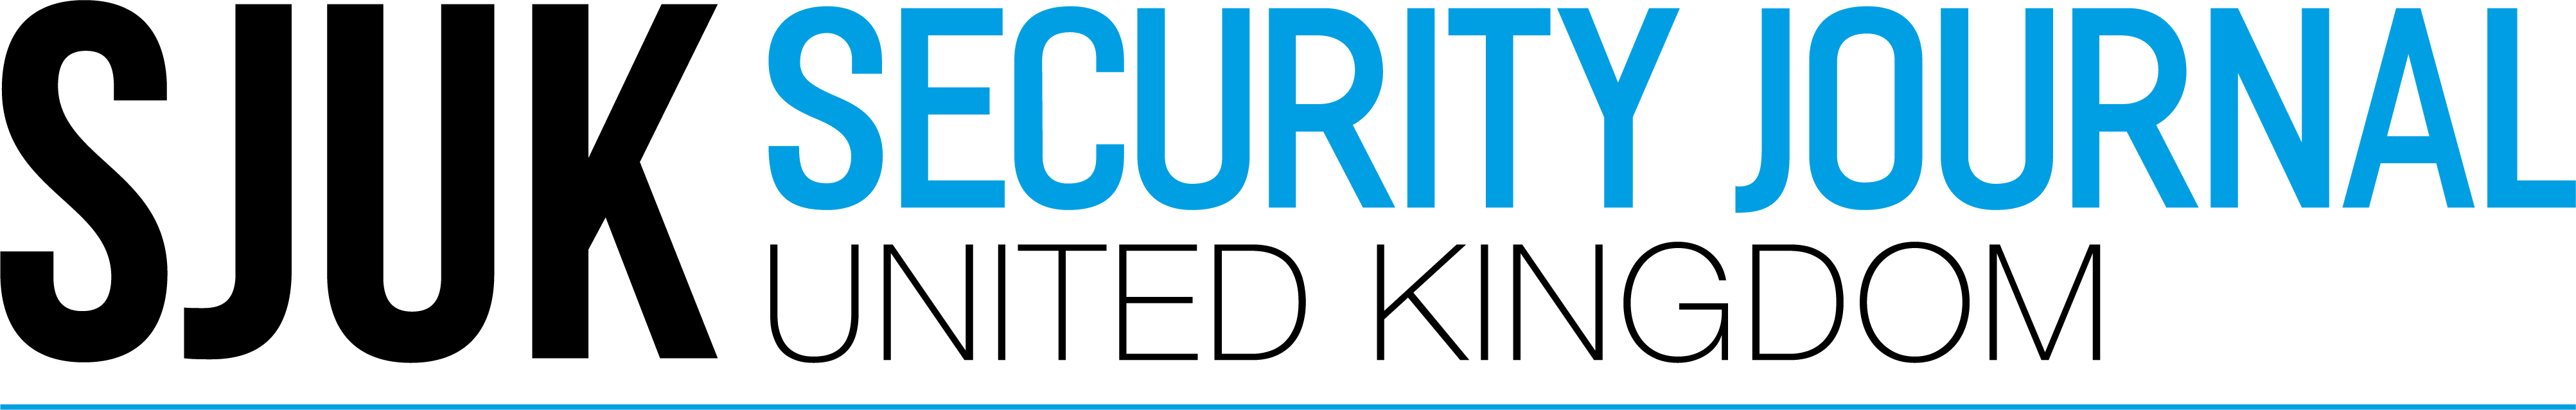 Security Journal UK logo